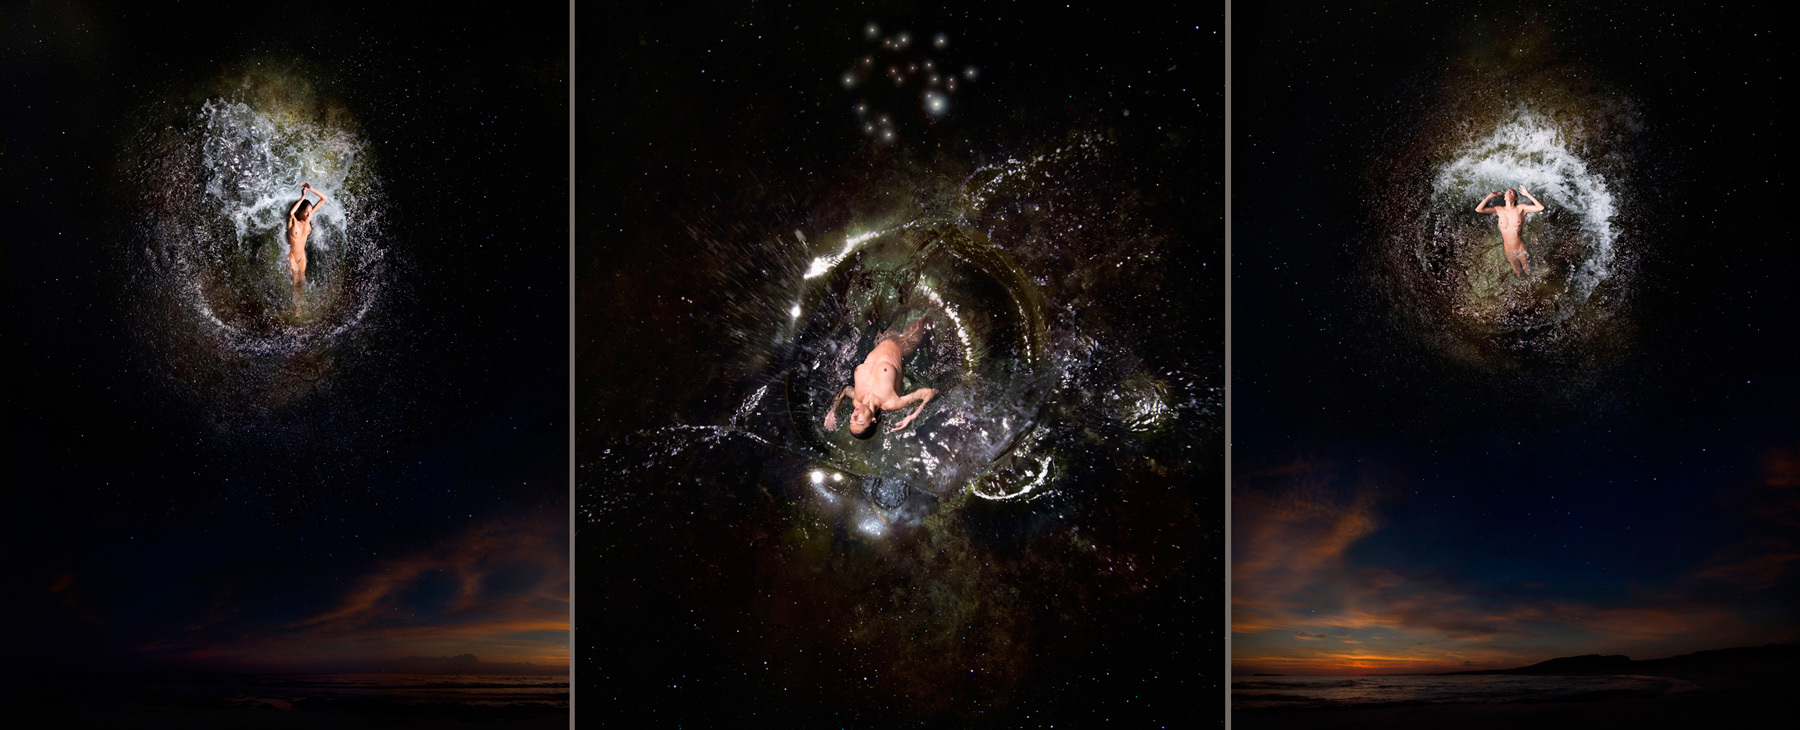 EUFONÍA de la Constelación de SAGITARIO. Fotografía digital nocturna y acuática. Configuración y retoque digitales